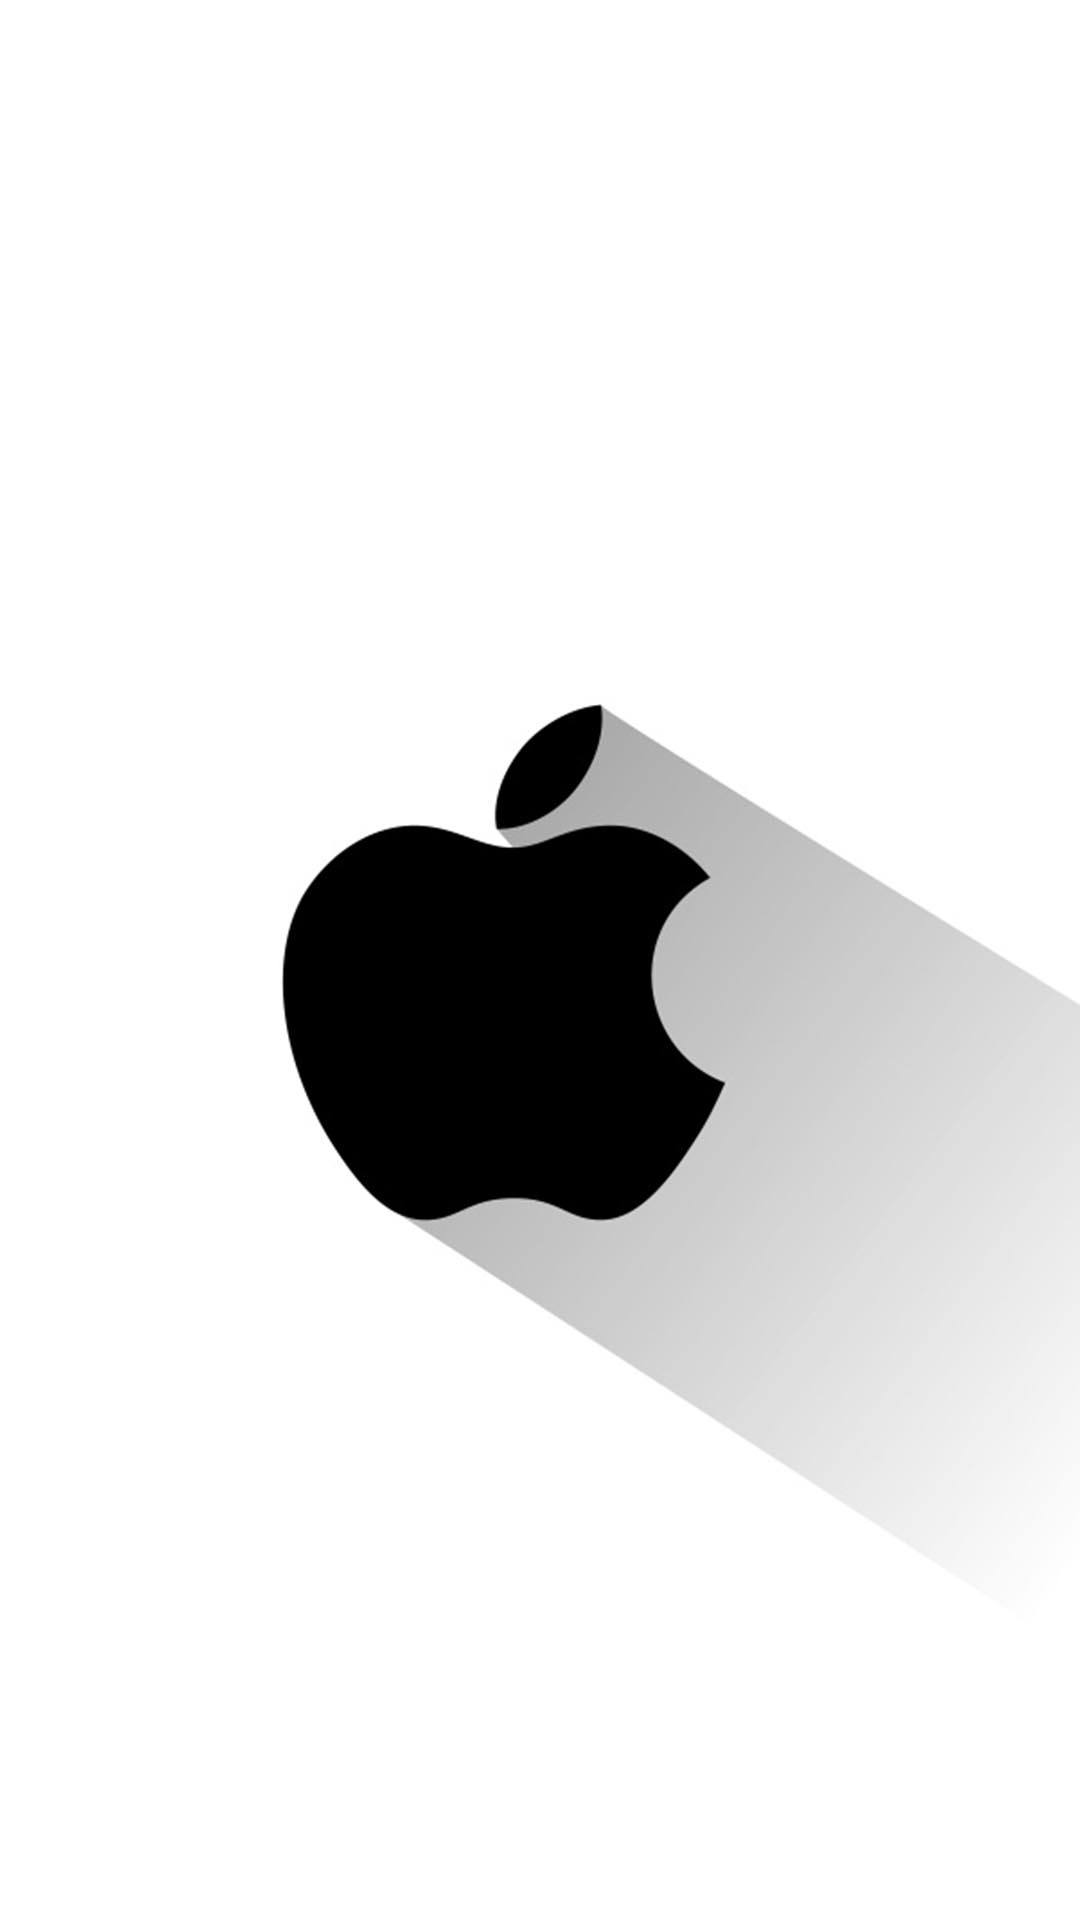 苹果logo超清壁纸，简洁唯美的苹果logo手机壁纸